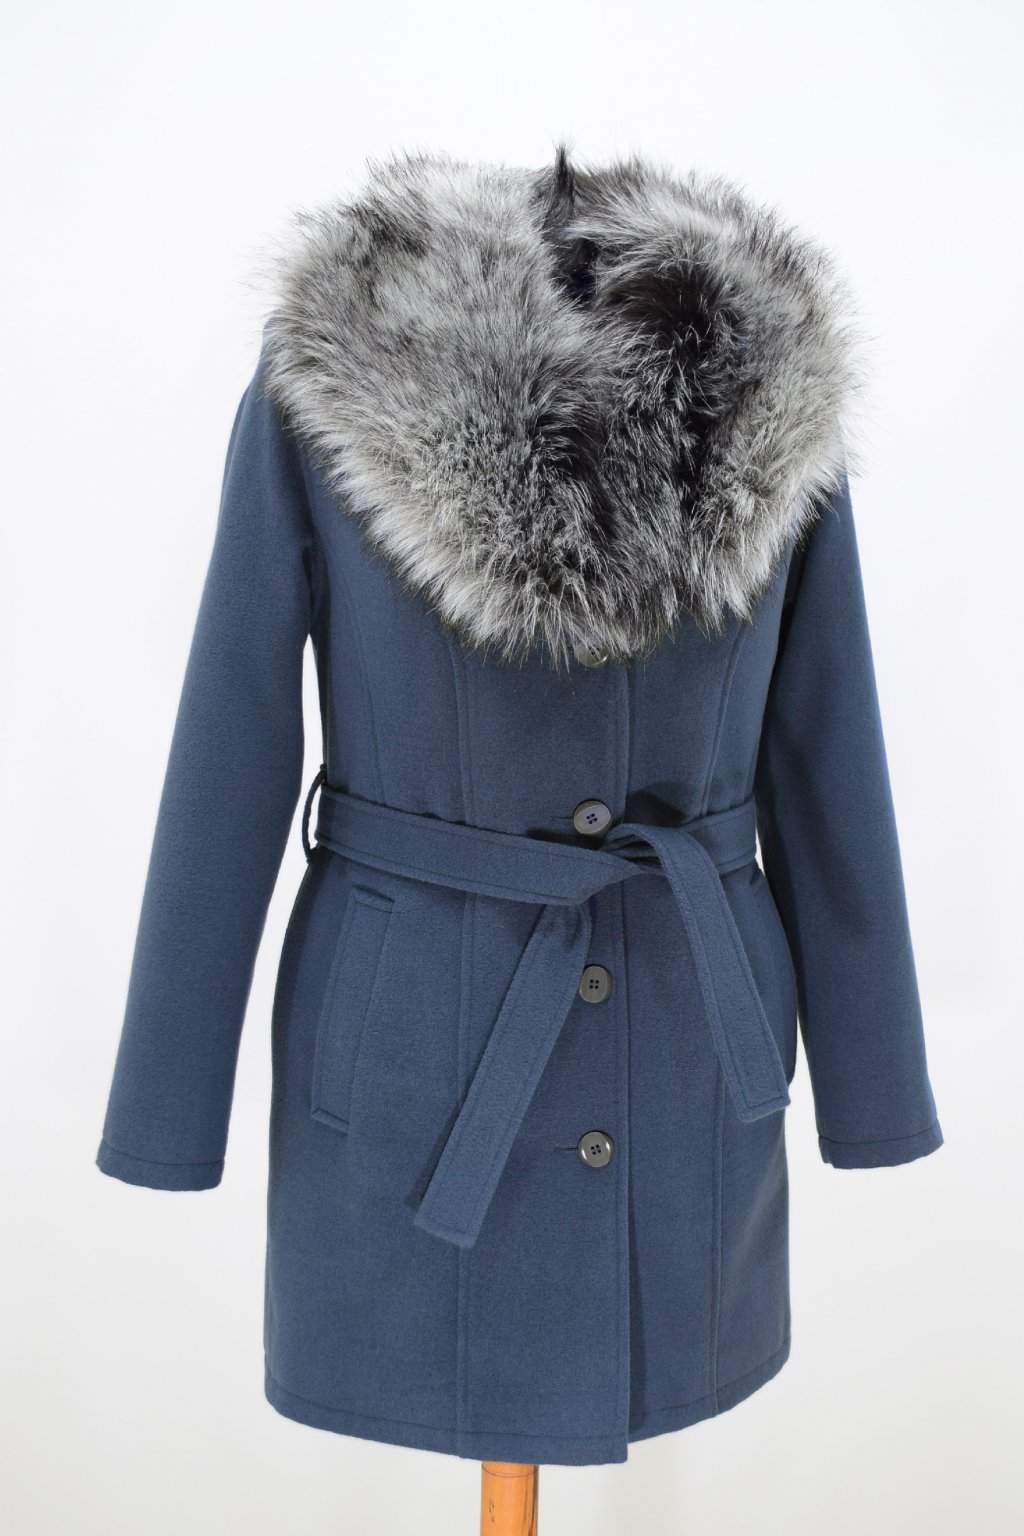 Dámský modrý zimní kabát s kožešinou Julie. - Vlastimil Žákovský - nadměrné  velikosti